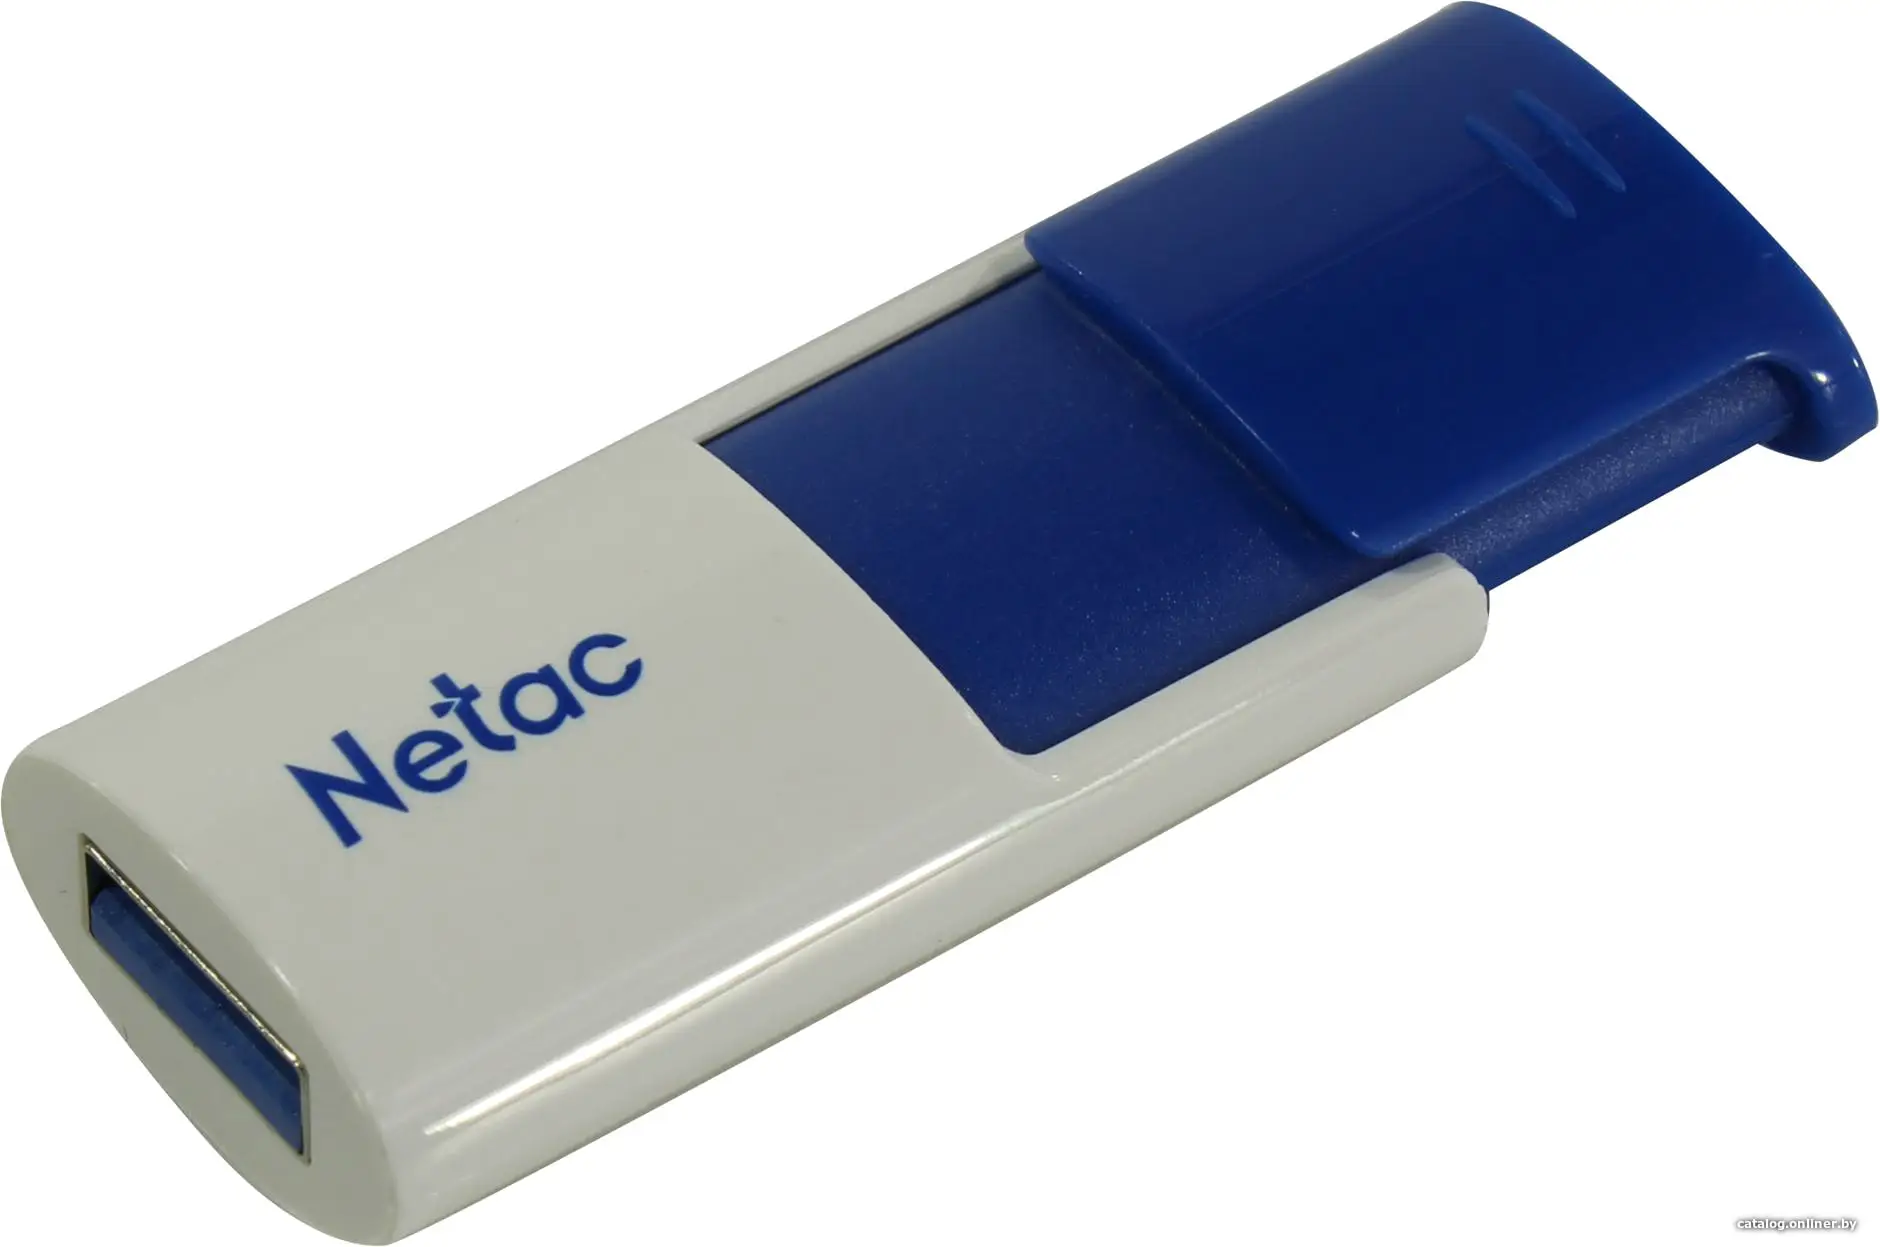 Купить 16Gb Netac U182 NT03U182N-016G-30BL, USB3.0, Blue, цена, опт и розница